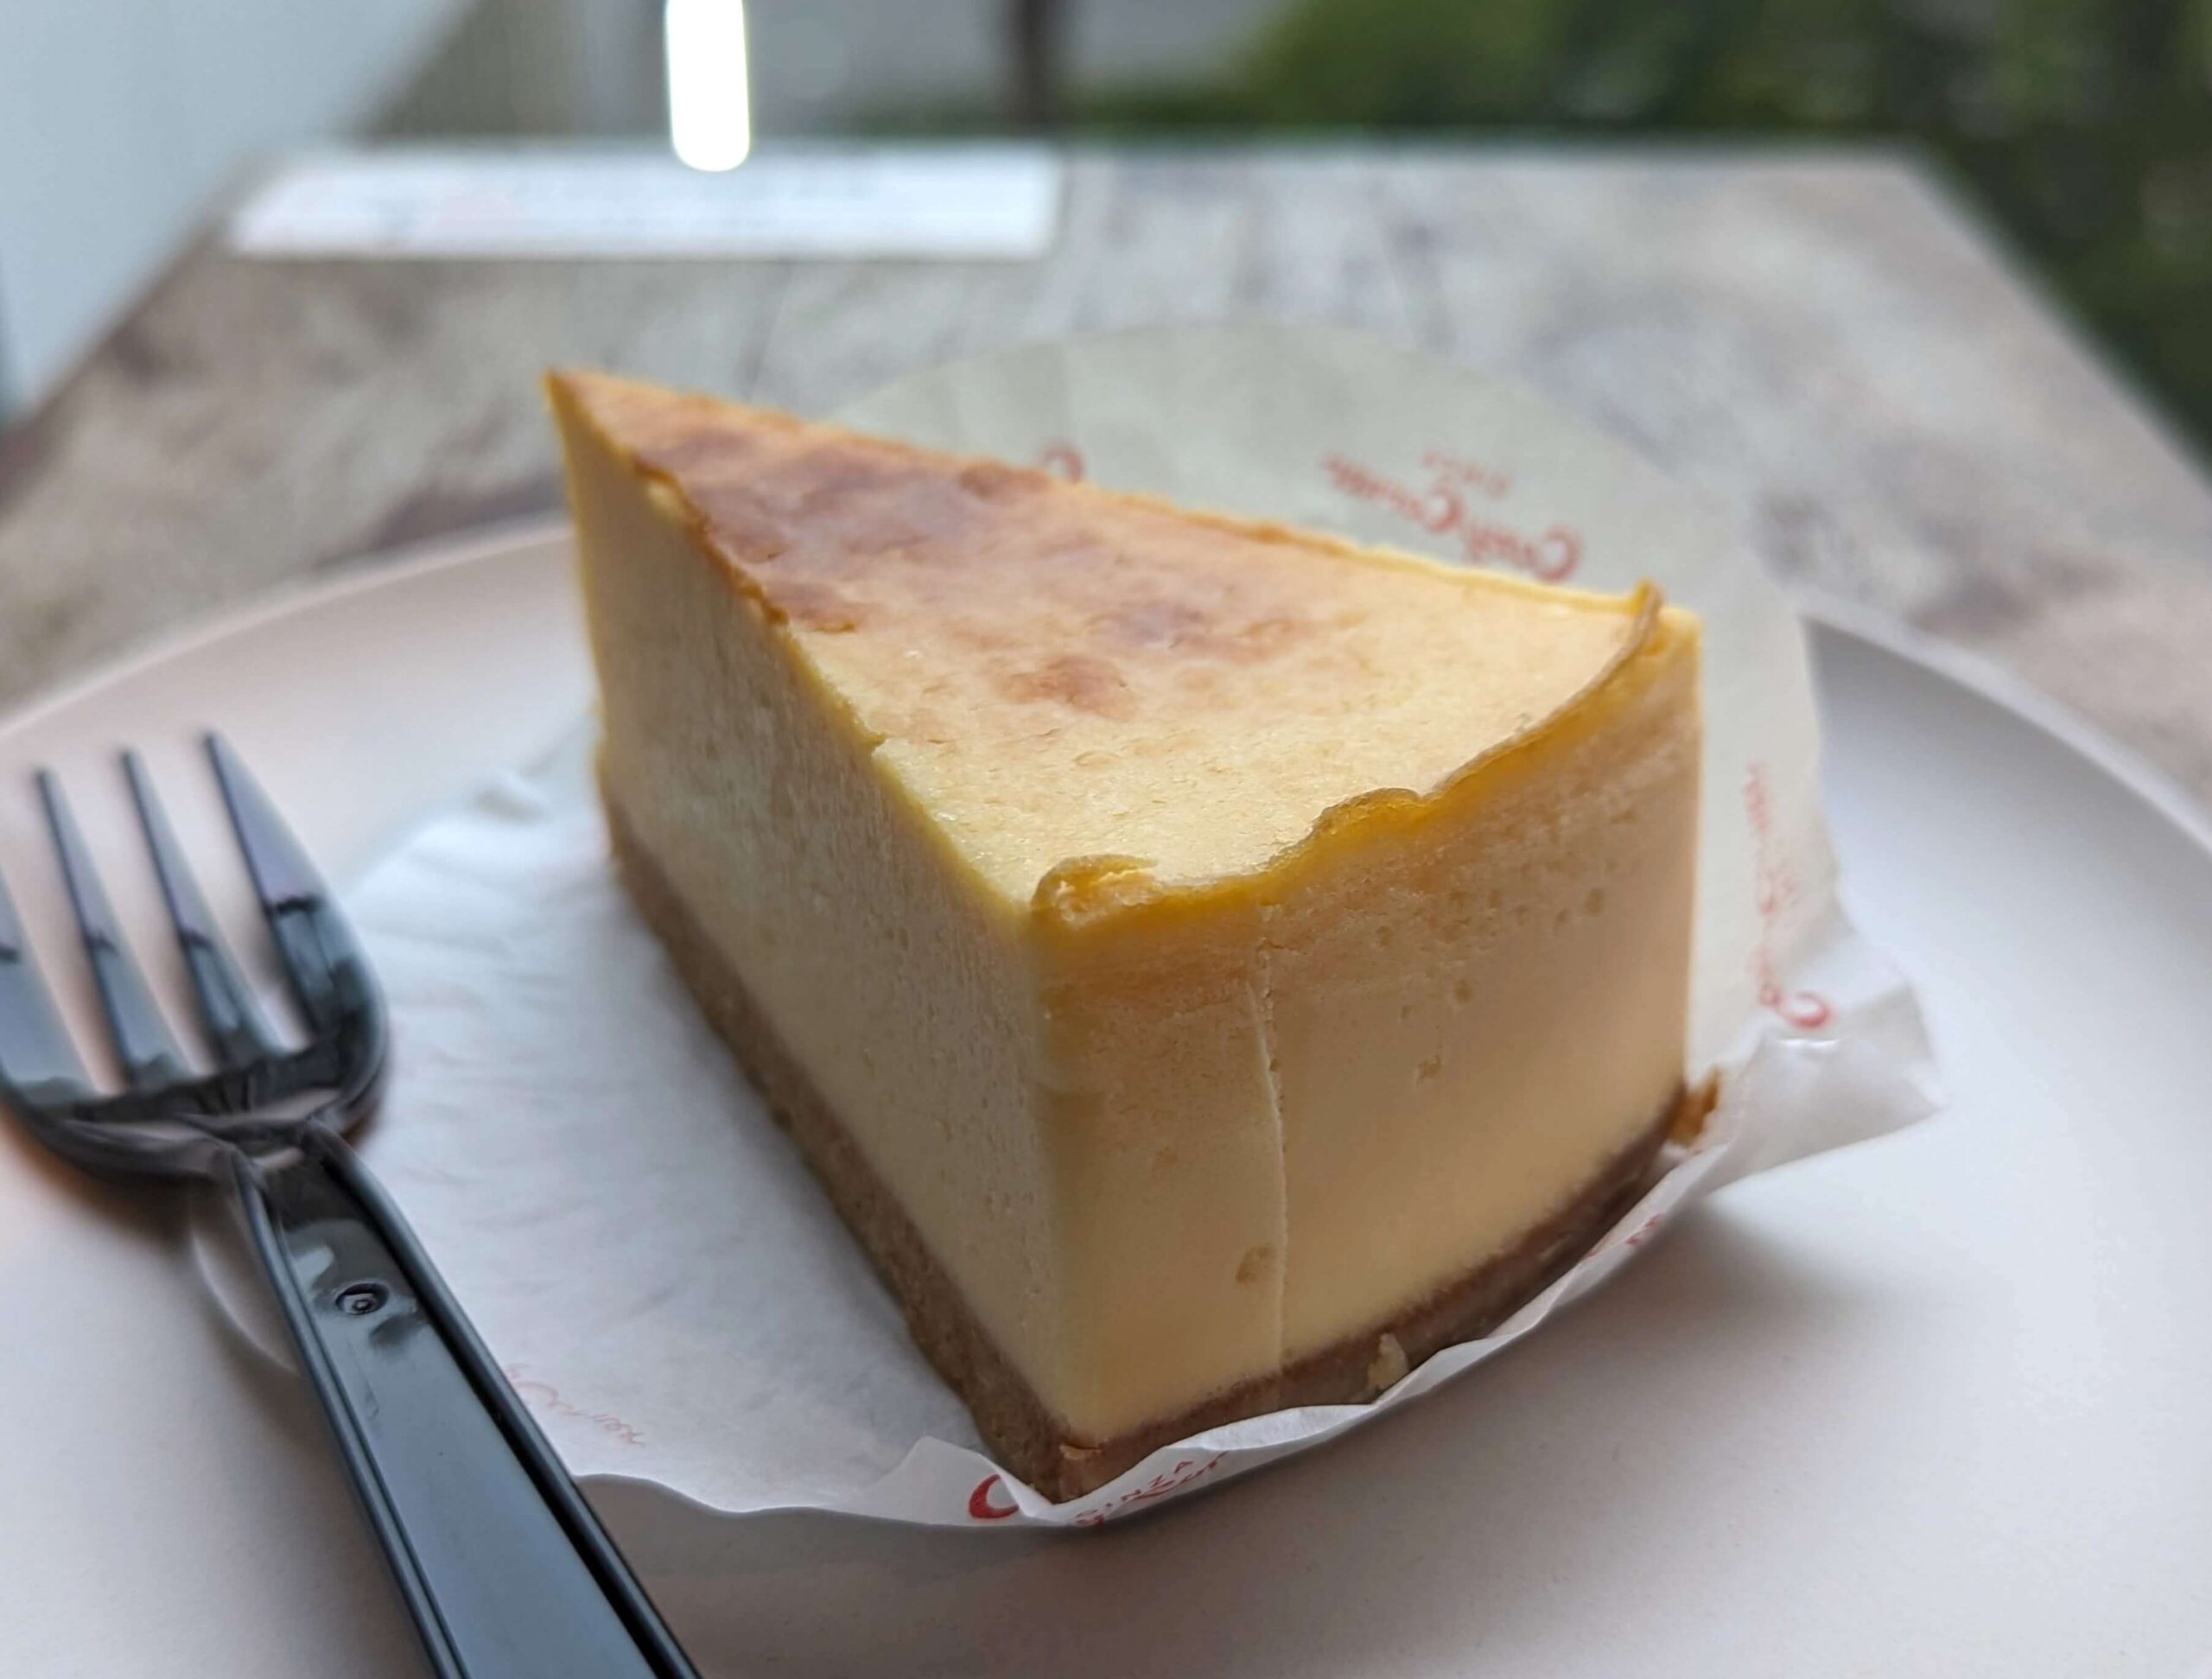 コージーコーナー「濃厚ベイクドチーズ」の写真